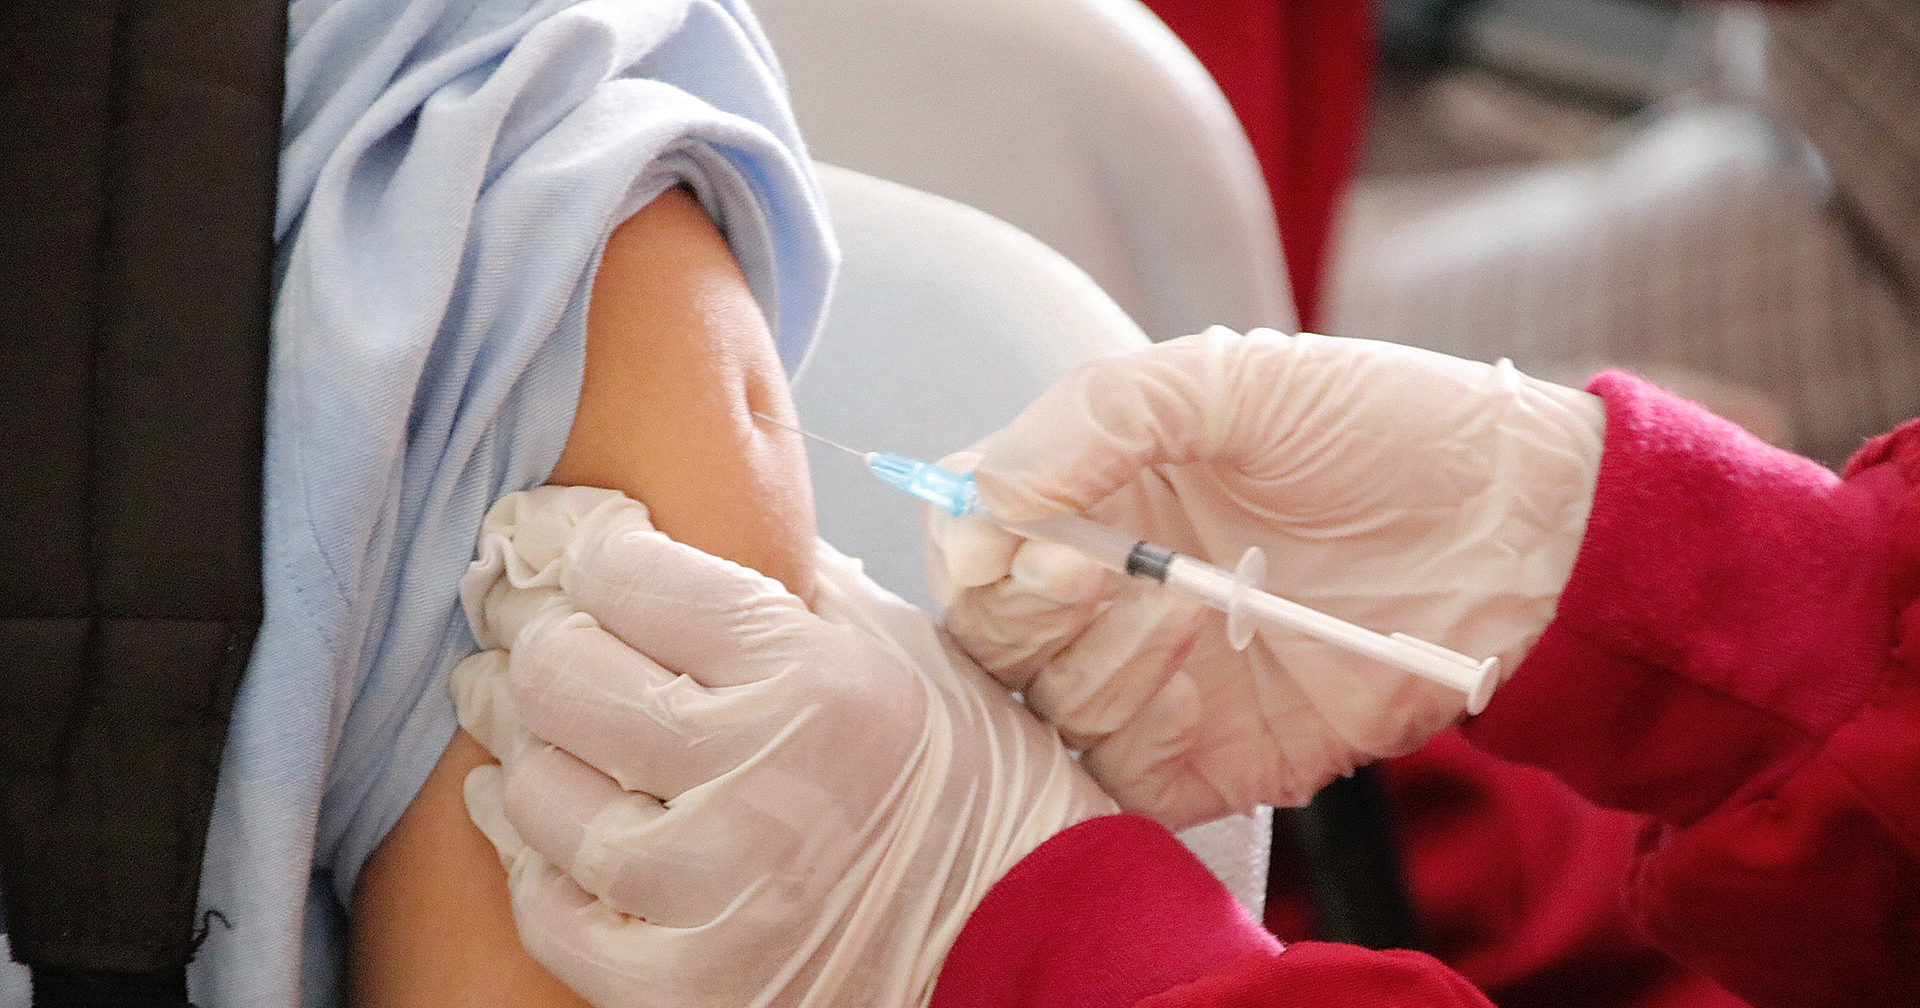 ญี่ปุ่นทุ่มงบ 75,000 ล้านบาท สำหรับโครงการวิจัยวัคซีนป้องกันโรคระบาด